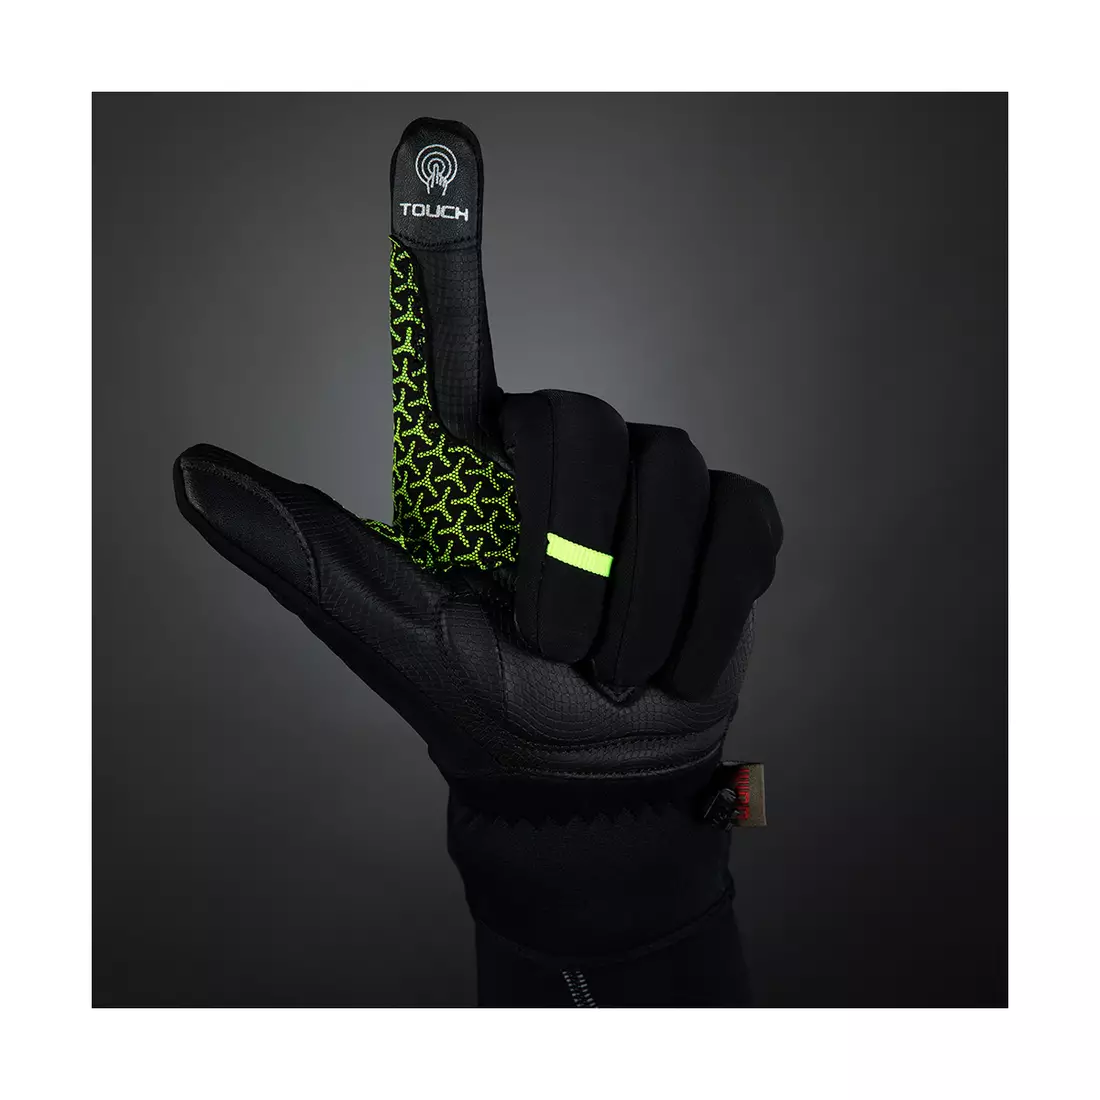 CHIBA EXPRESS+ lehké zimní cyklistické rukavice s pouzdrem, fluor / černá 3110719